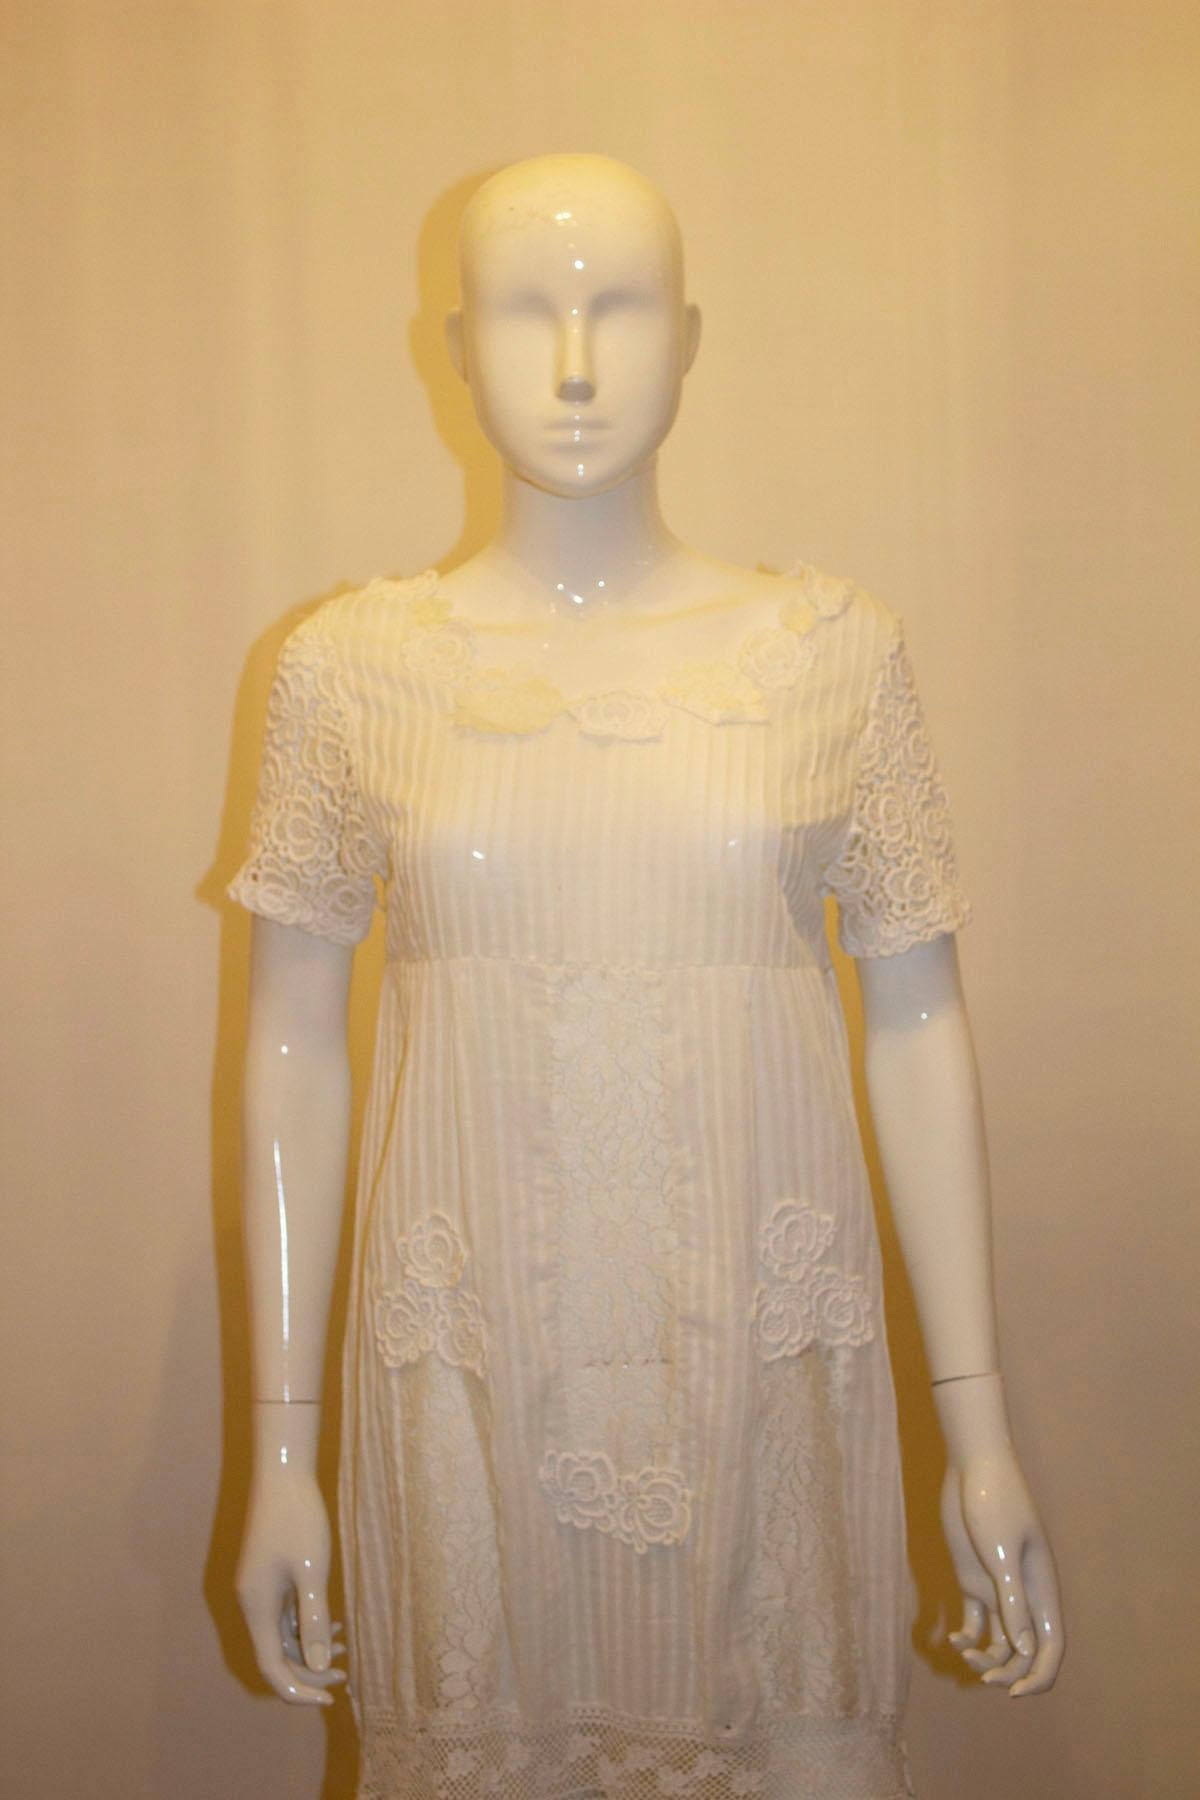 Ein elegantes und leicht zu tragendes weißes Sommerkleid, das auch als Hochzeitskleid getragen werden kann. Das Kleid ist säulenförmig und passt über den Kopf, obwohl ein Reißverschluss leicht hinzugefügt werden könnte. Es hat Spitzenärmel,